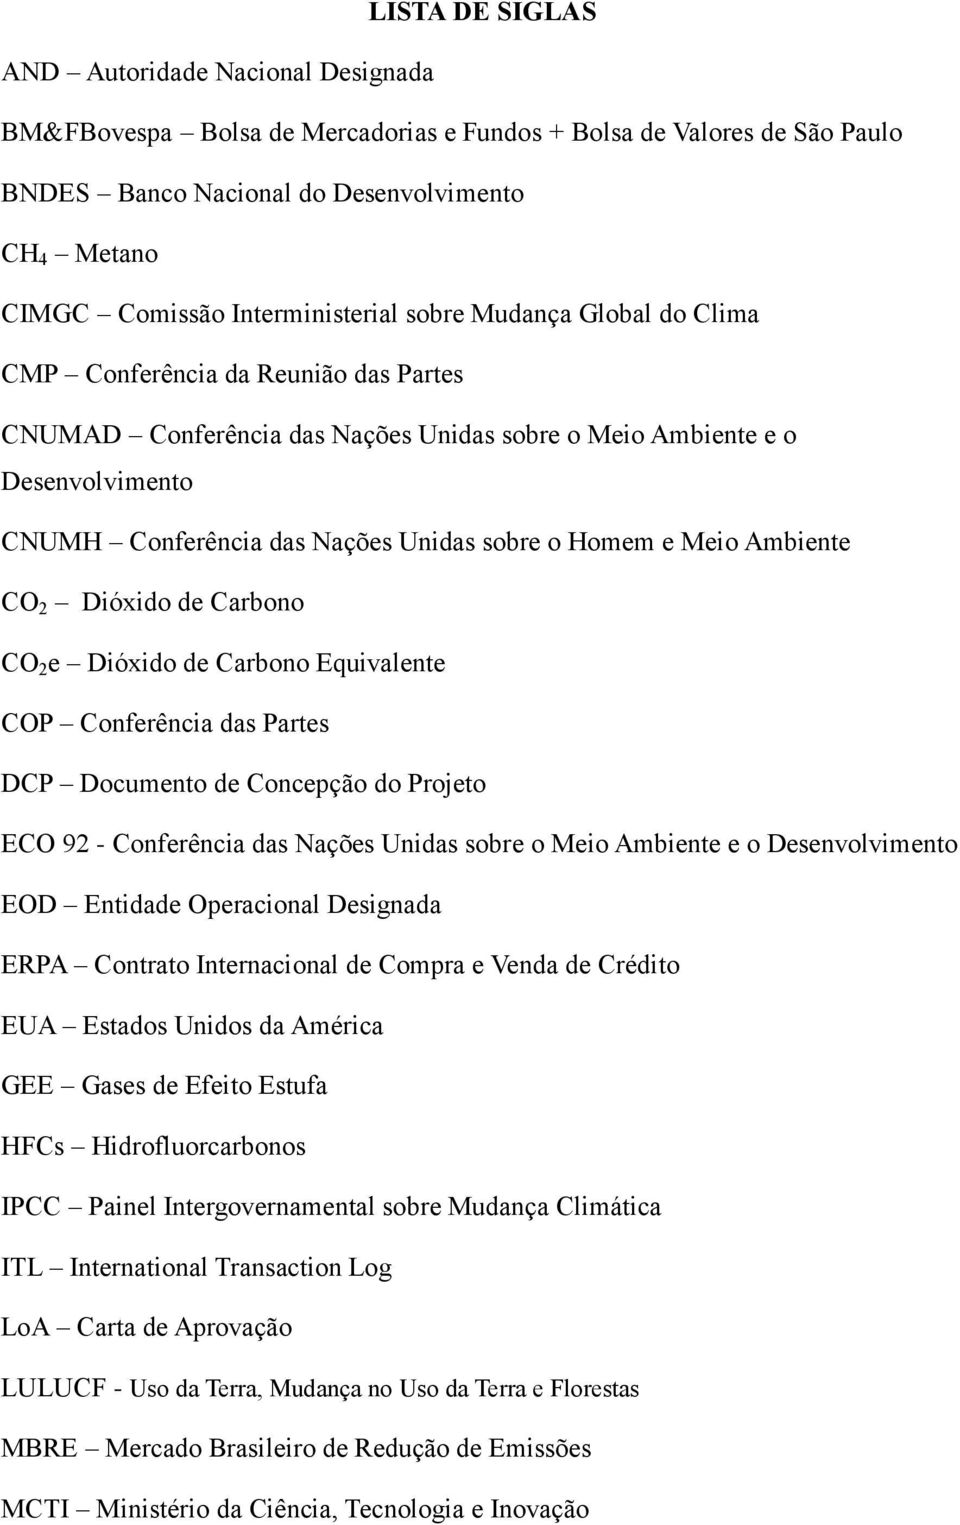 sobre o Homem e Meio Ambiente CO 2 Dióxido de Carbono CO 2 e Dióxido de Carbono Equivalente COP Conferência das Partes DCP Documento de Concepção do Projeto ECO 92 - Conferência das Nações Unidas